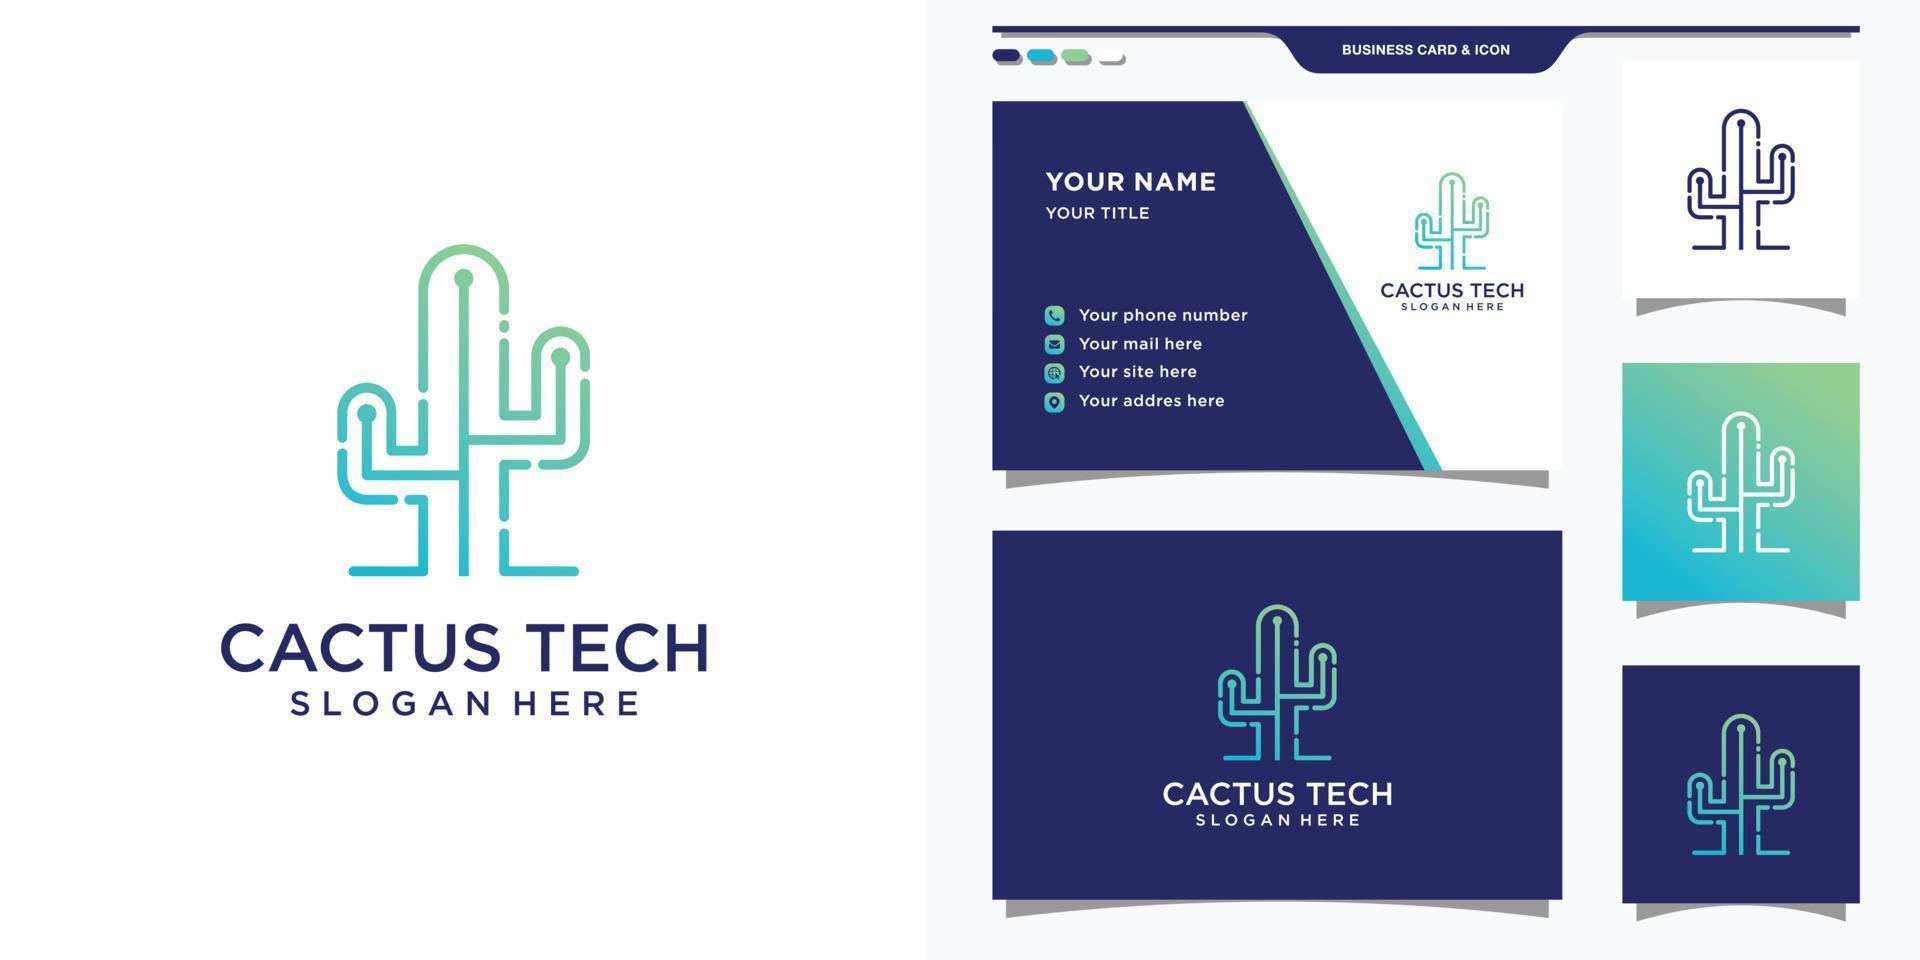 cactuslogo met gradiënt-tech-stijl en visitekaartjeontwerp. cactus tech logo ontwerp sjabloon premium vector